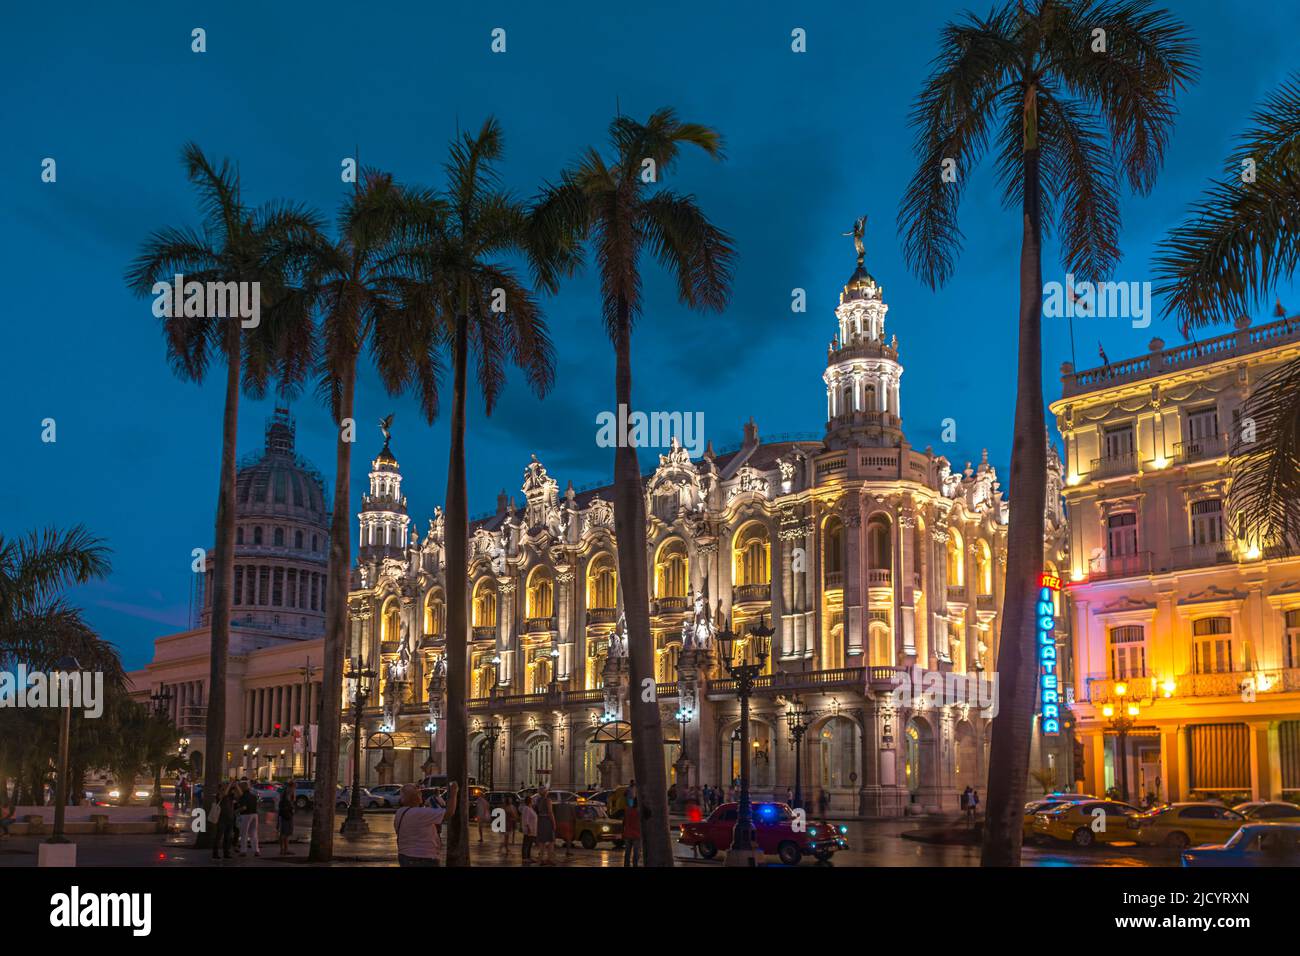 Il Gran Teatro de la Habana, splendidamente illuminato, si trova al Parque Central, l'Avana, Cuba durante l'ora blu Foto Stock